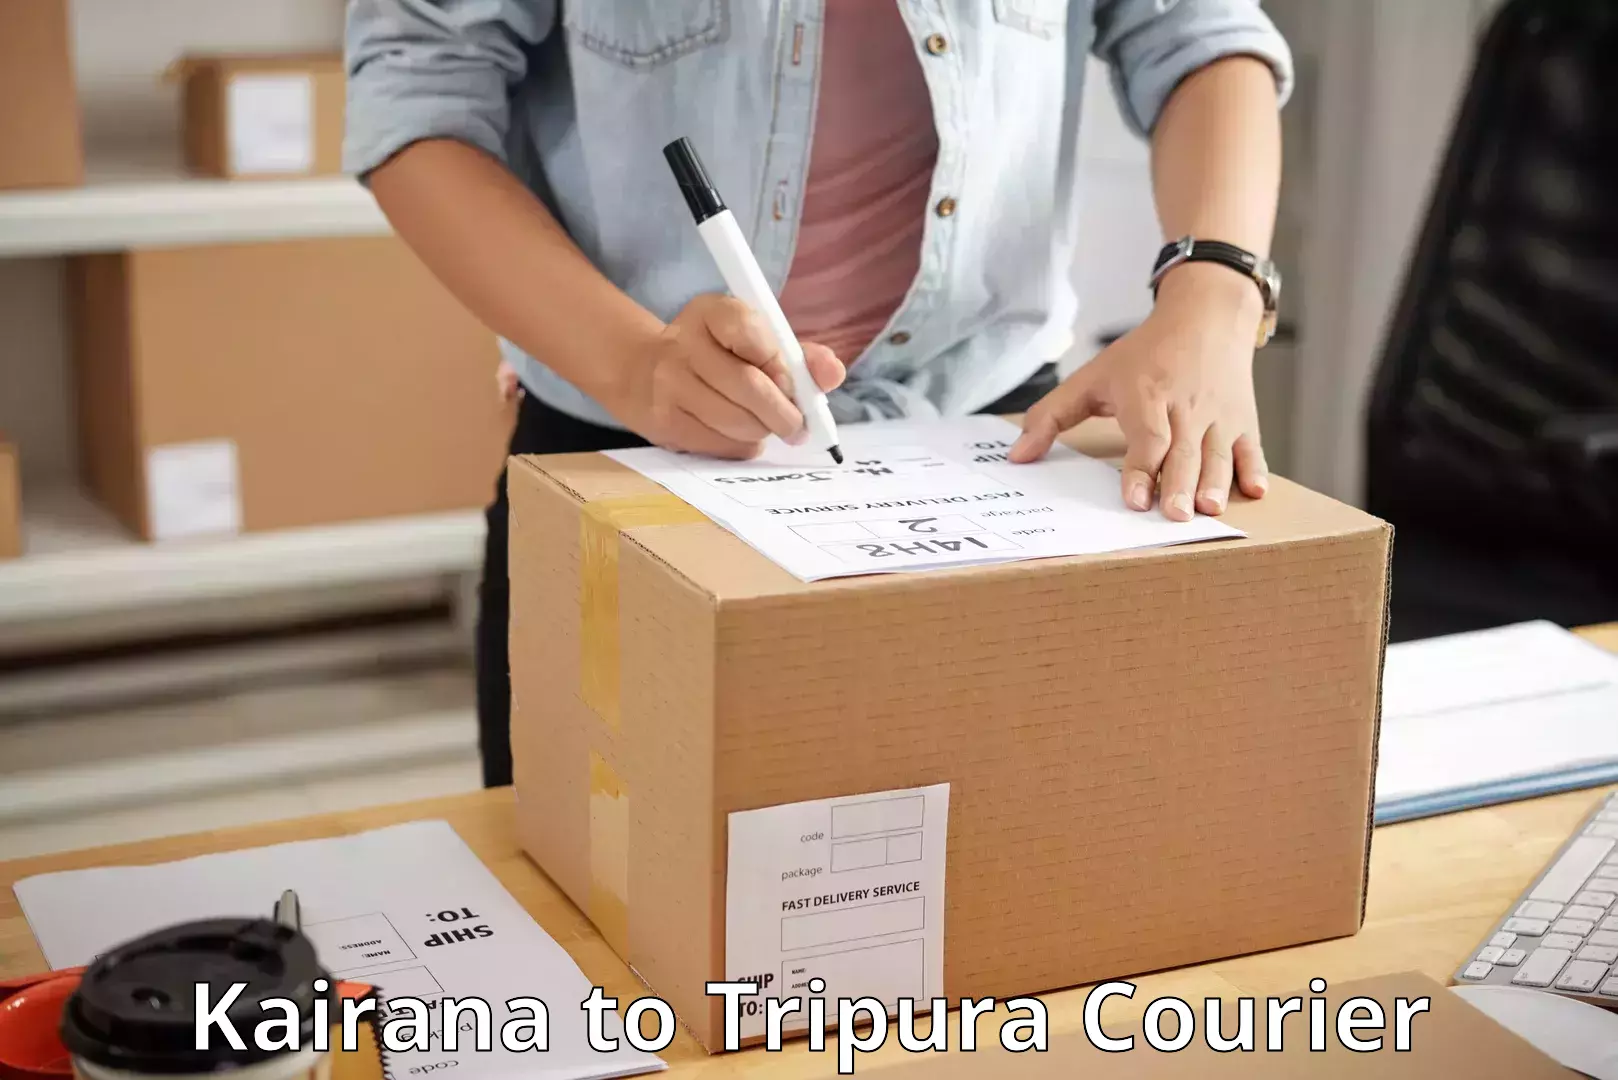 High-capacity parcel service Kairana to Tripura